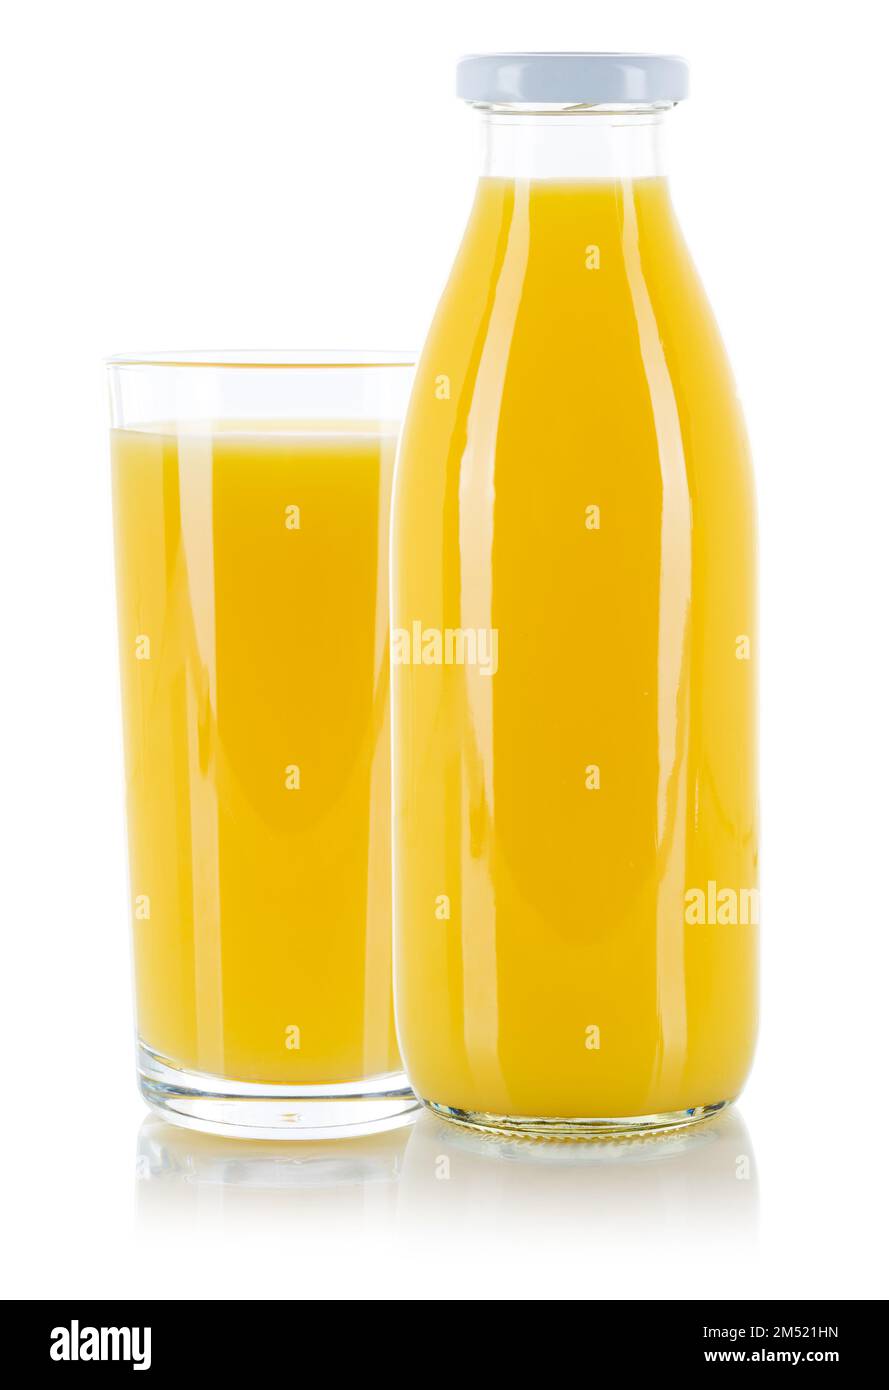 Orange juice fresh glass bottle isolated on a white background Stock Photo